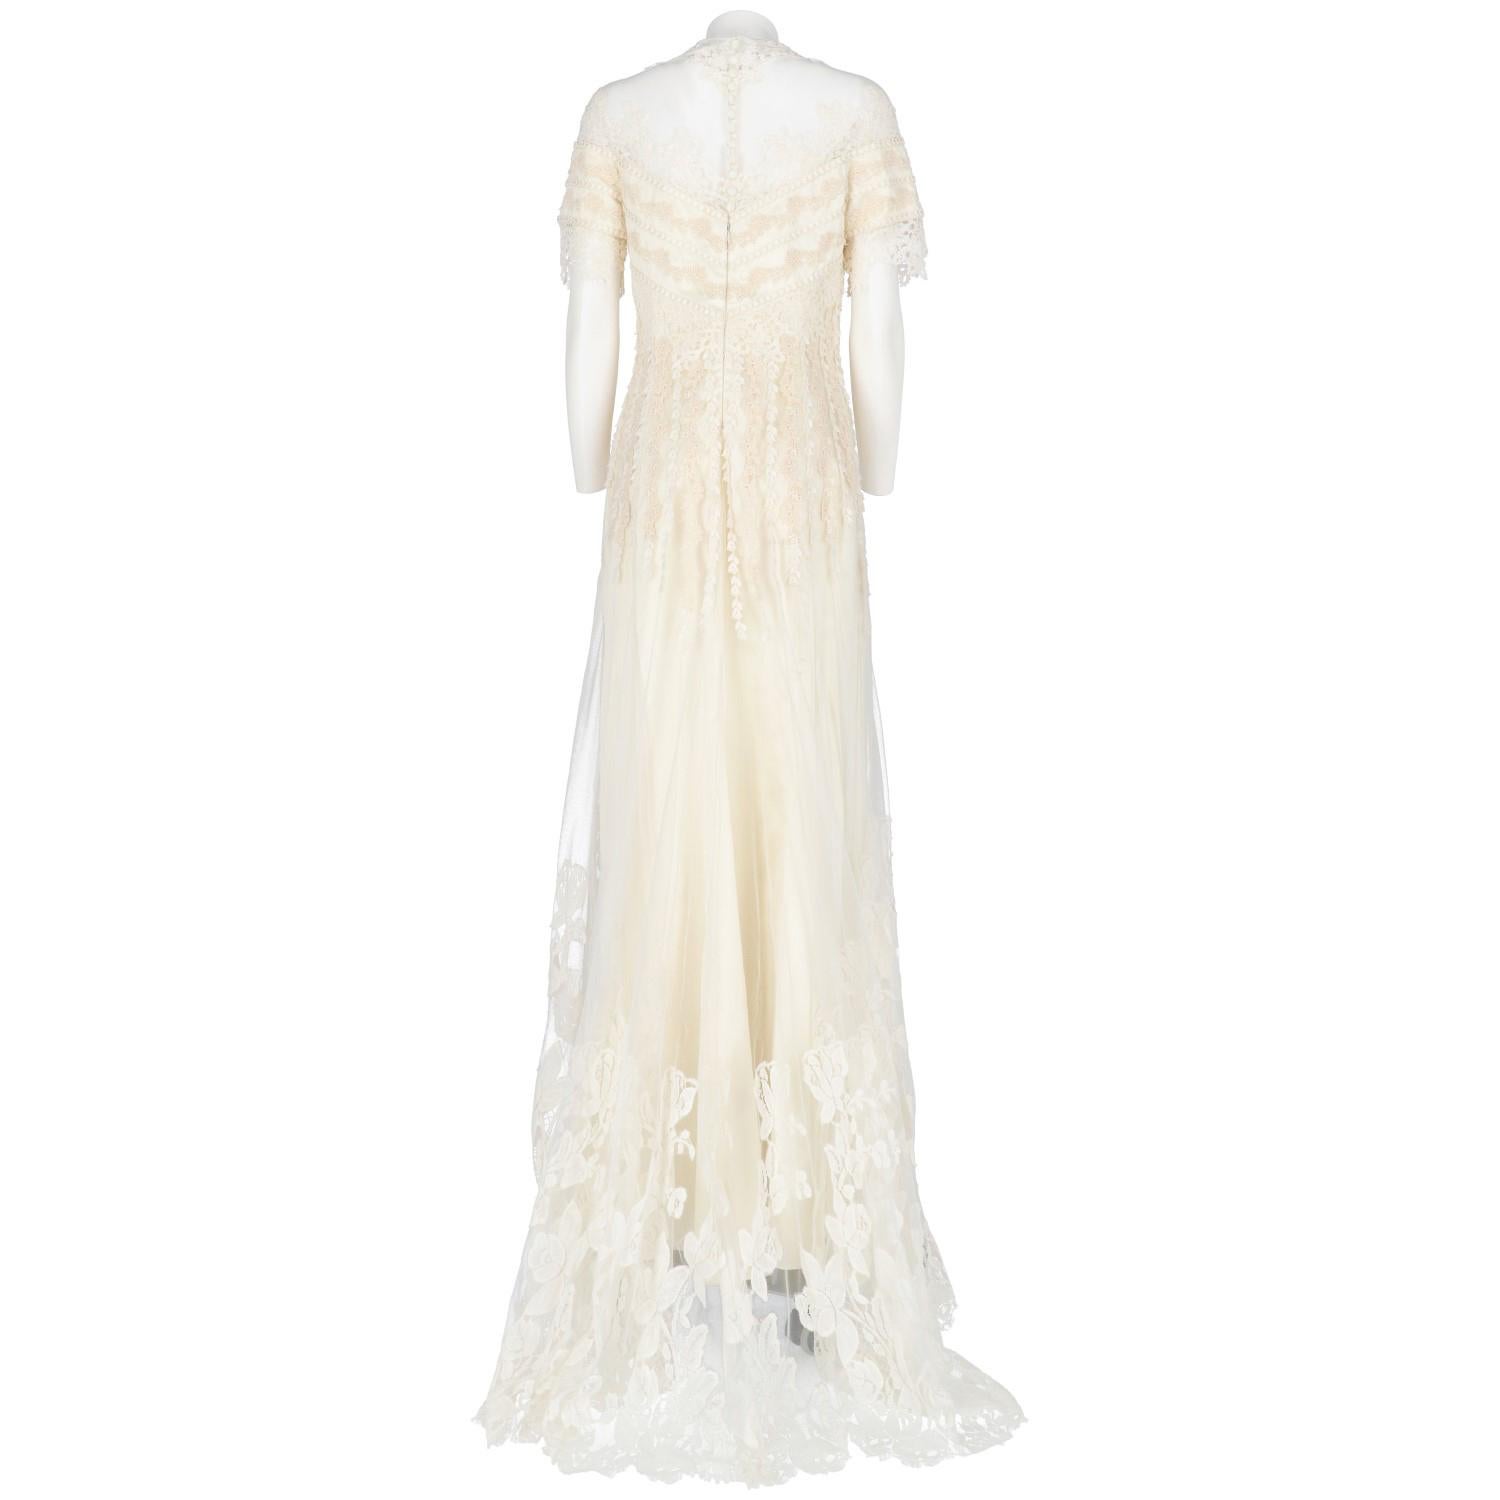 Beige 1990s Cailan'd Lace Wedding Dress